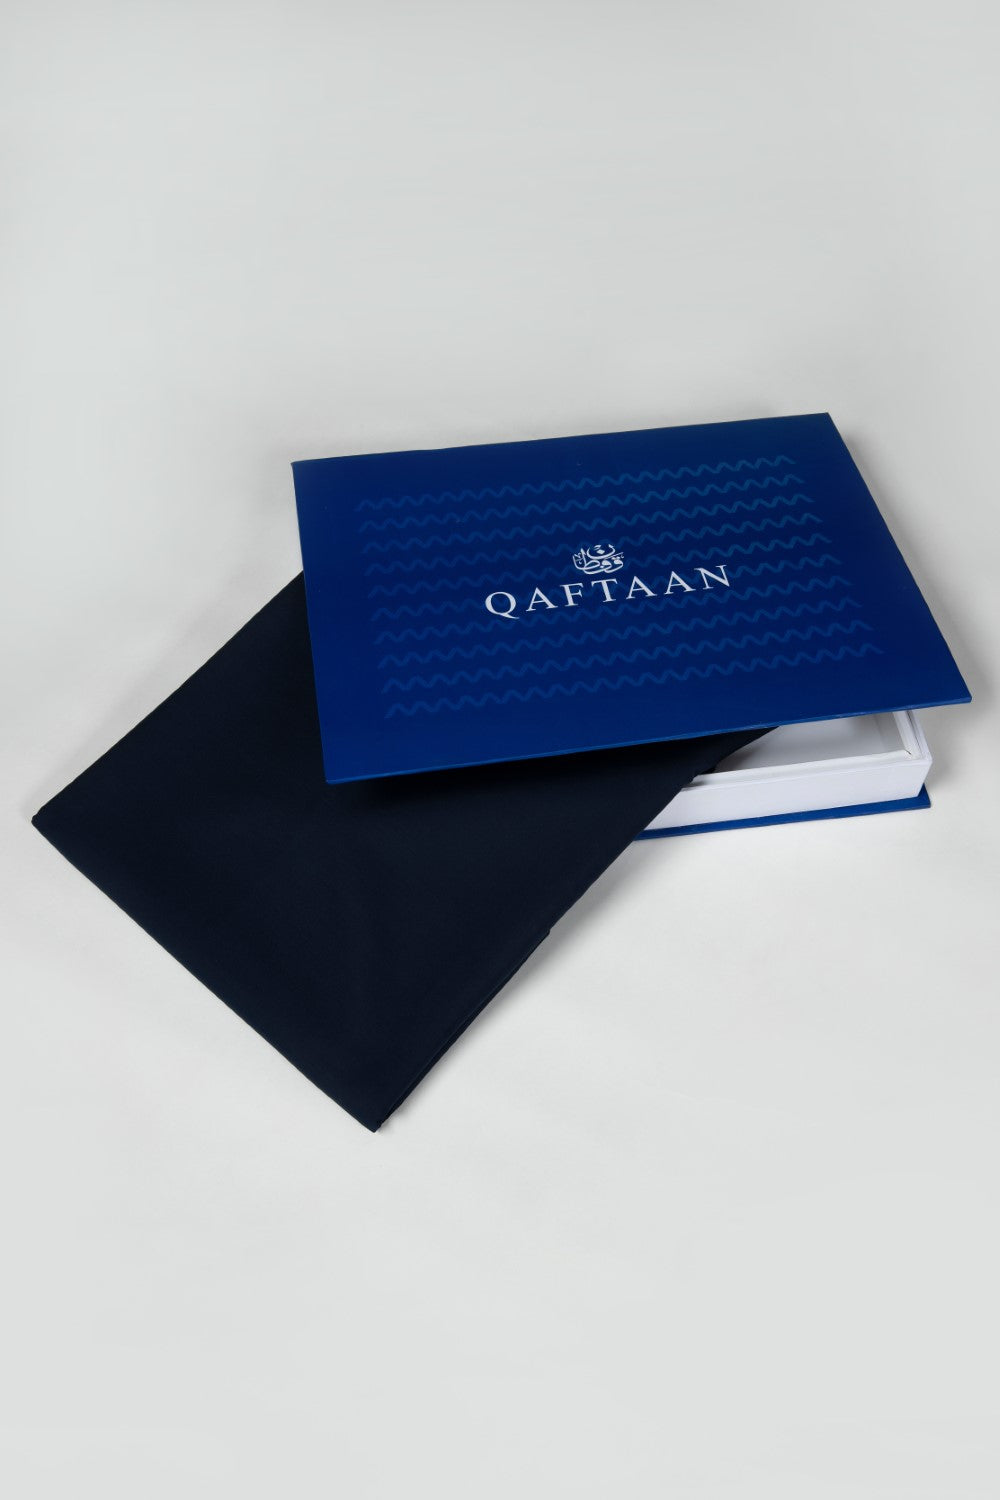 Unstitched Qaftan Suit